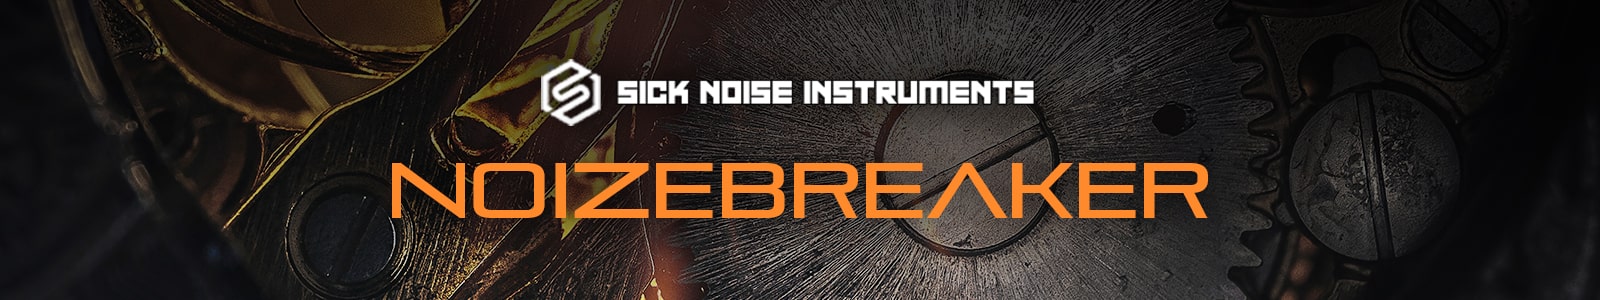 NoizeBreaker by Sick Noise Instruments